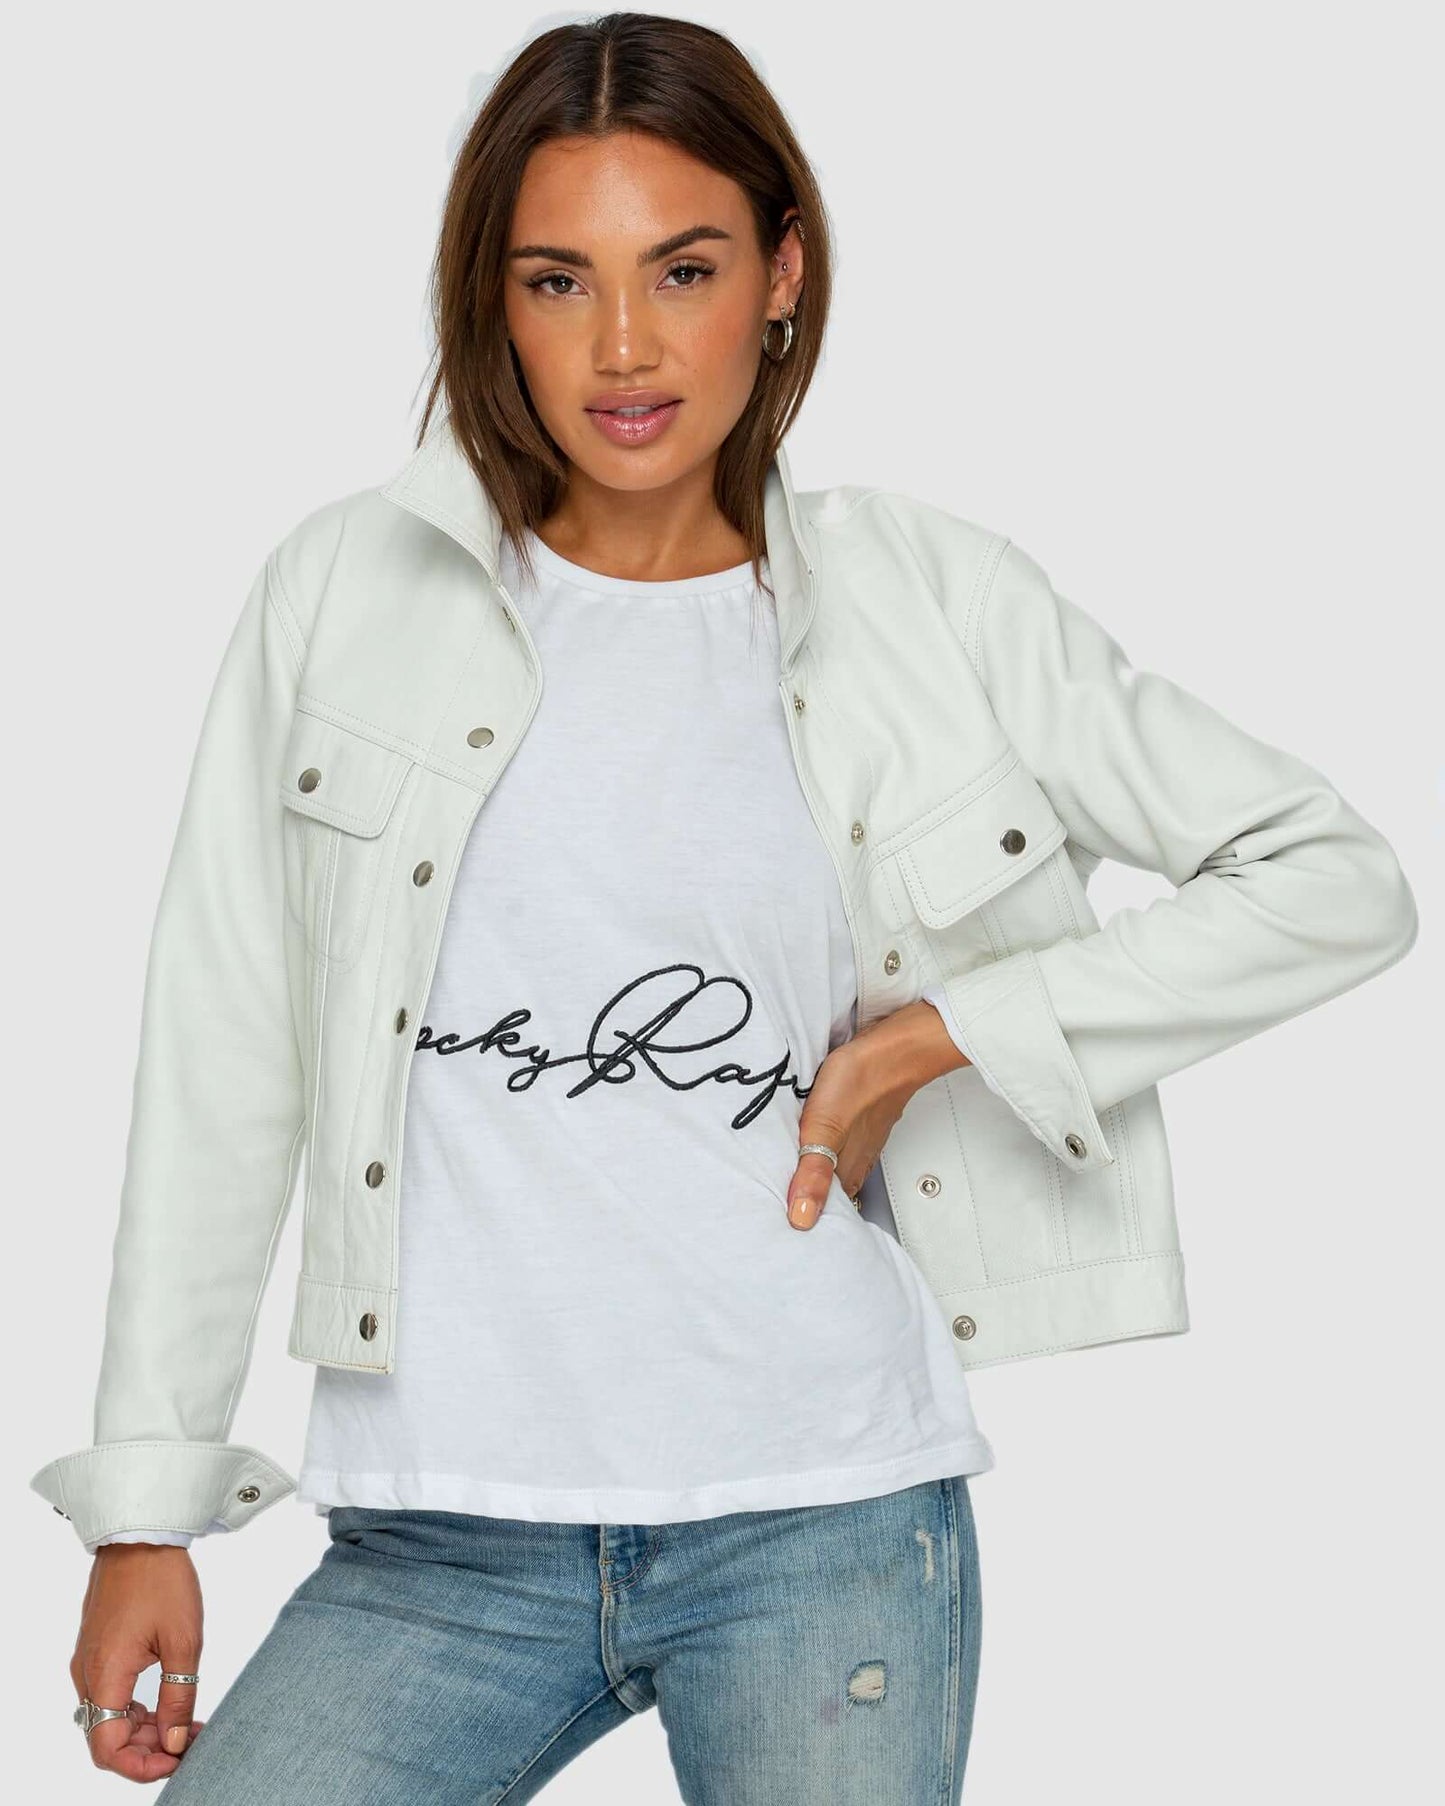 "Denim Style" Leather Jacket - White